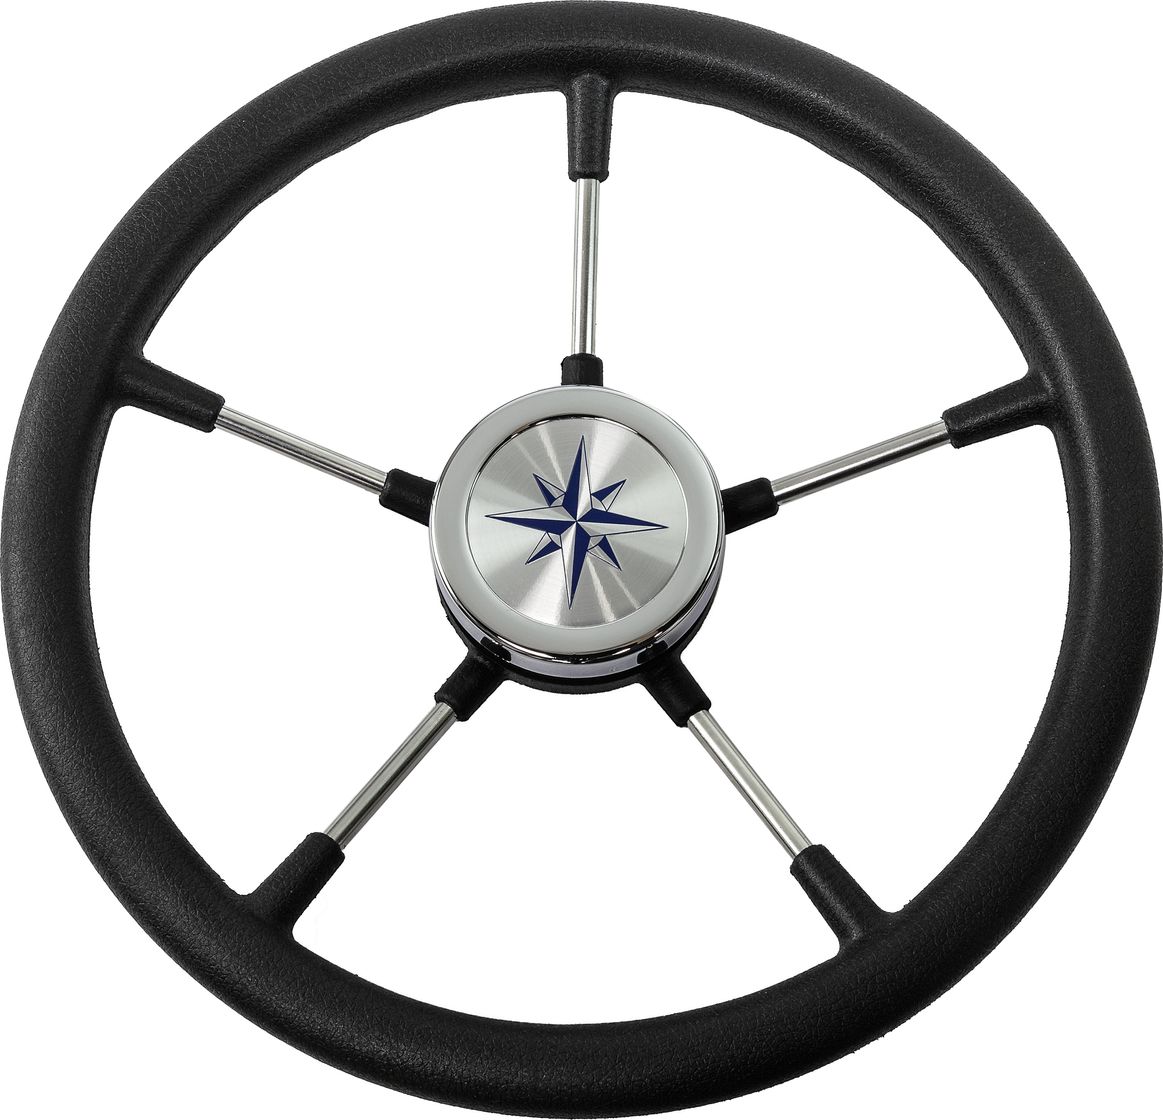 Рулевое колесо RIVA RSL обод черный, спицы серебряные д. 360 мм VN735022-01 рулевое колесо v57w v57w